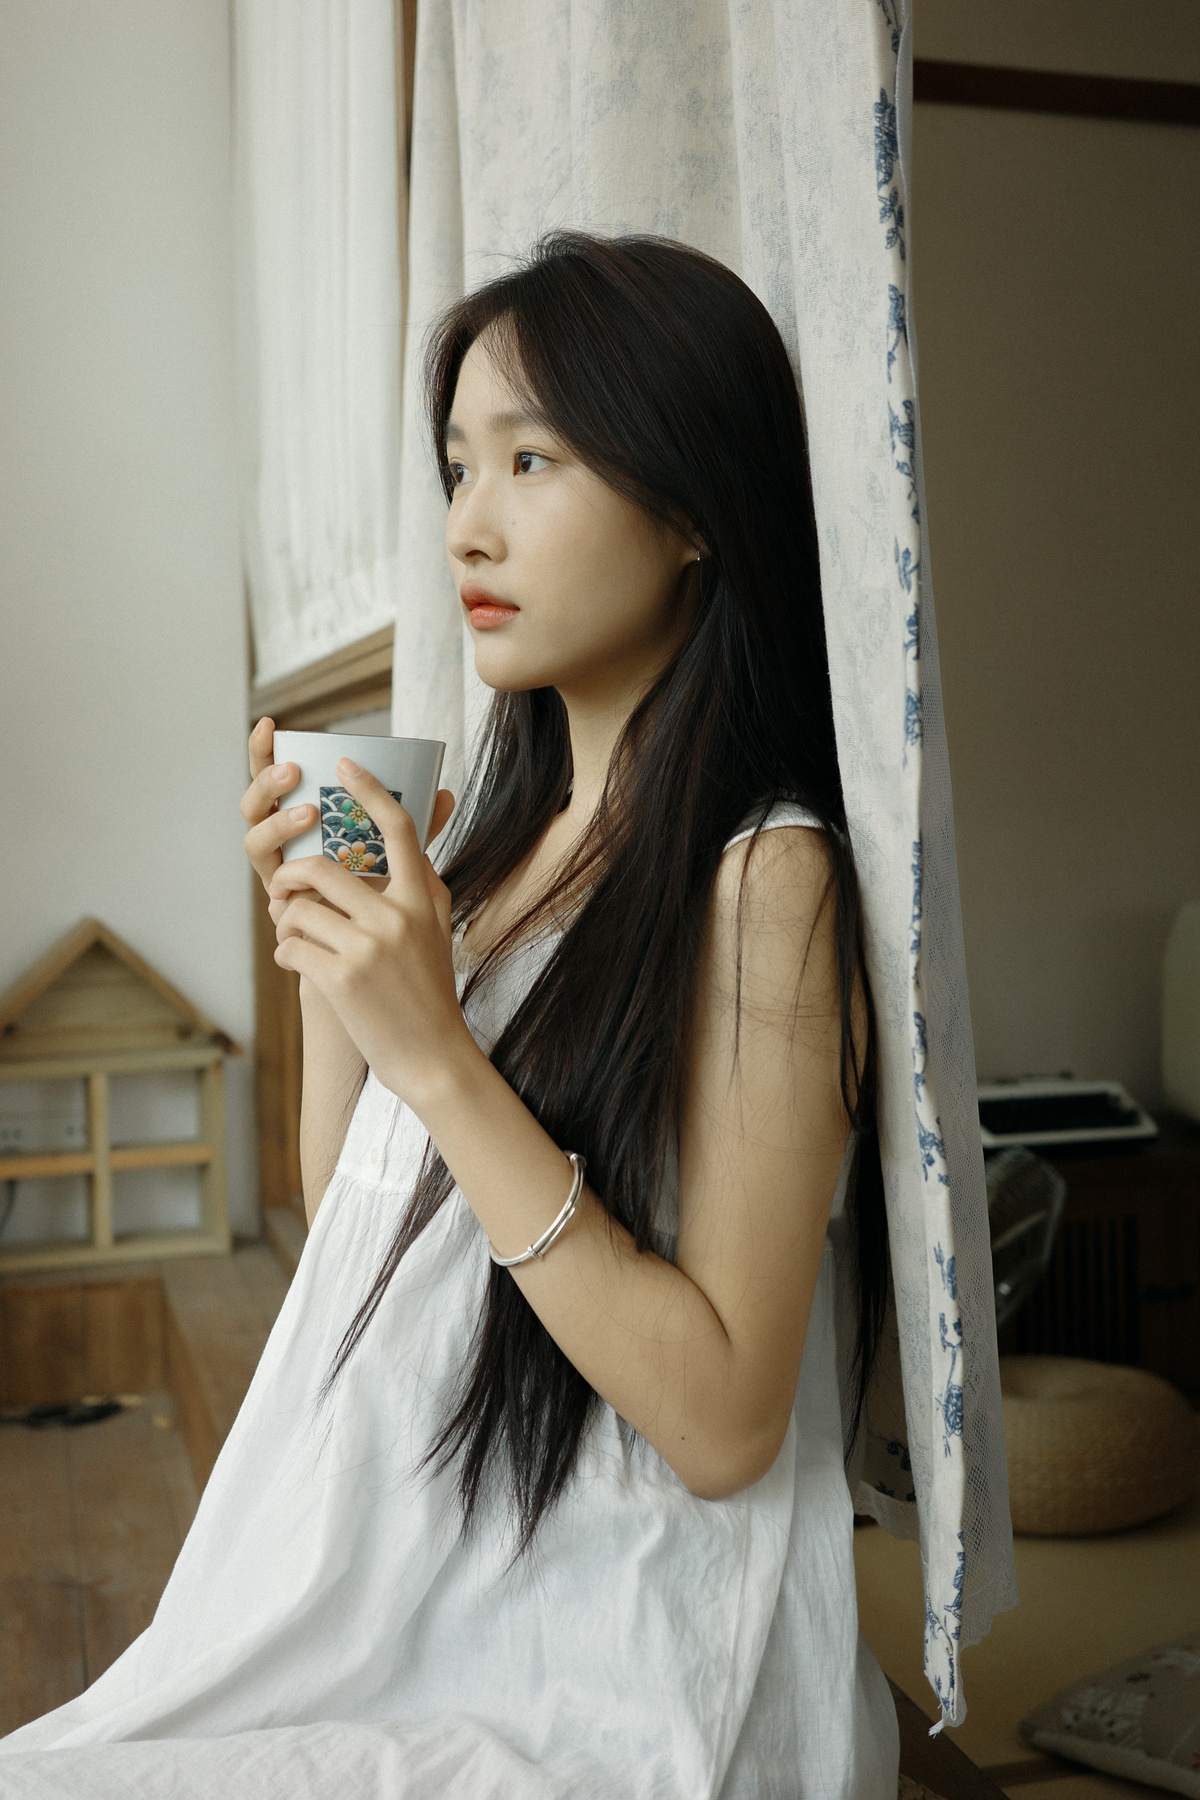 一位年轻女子拿着一杯茶或咖啡站在窗前 窗帘是透明的。